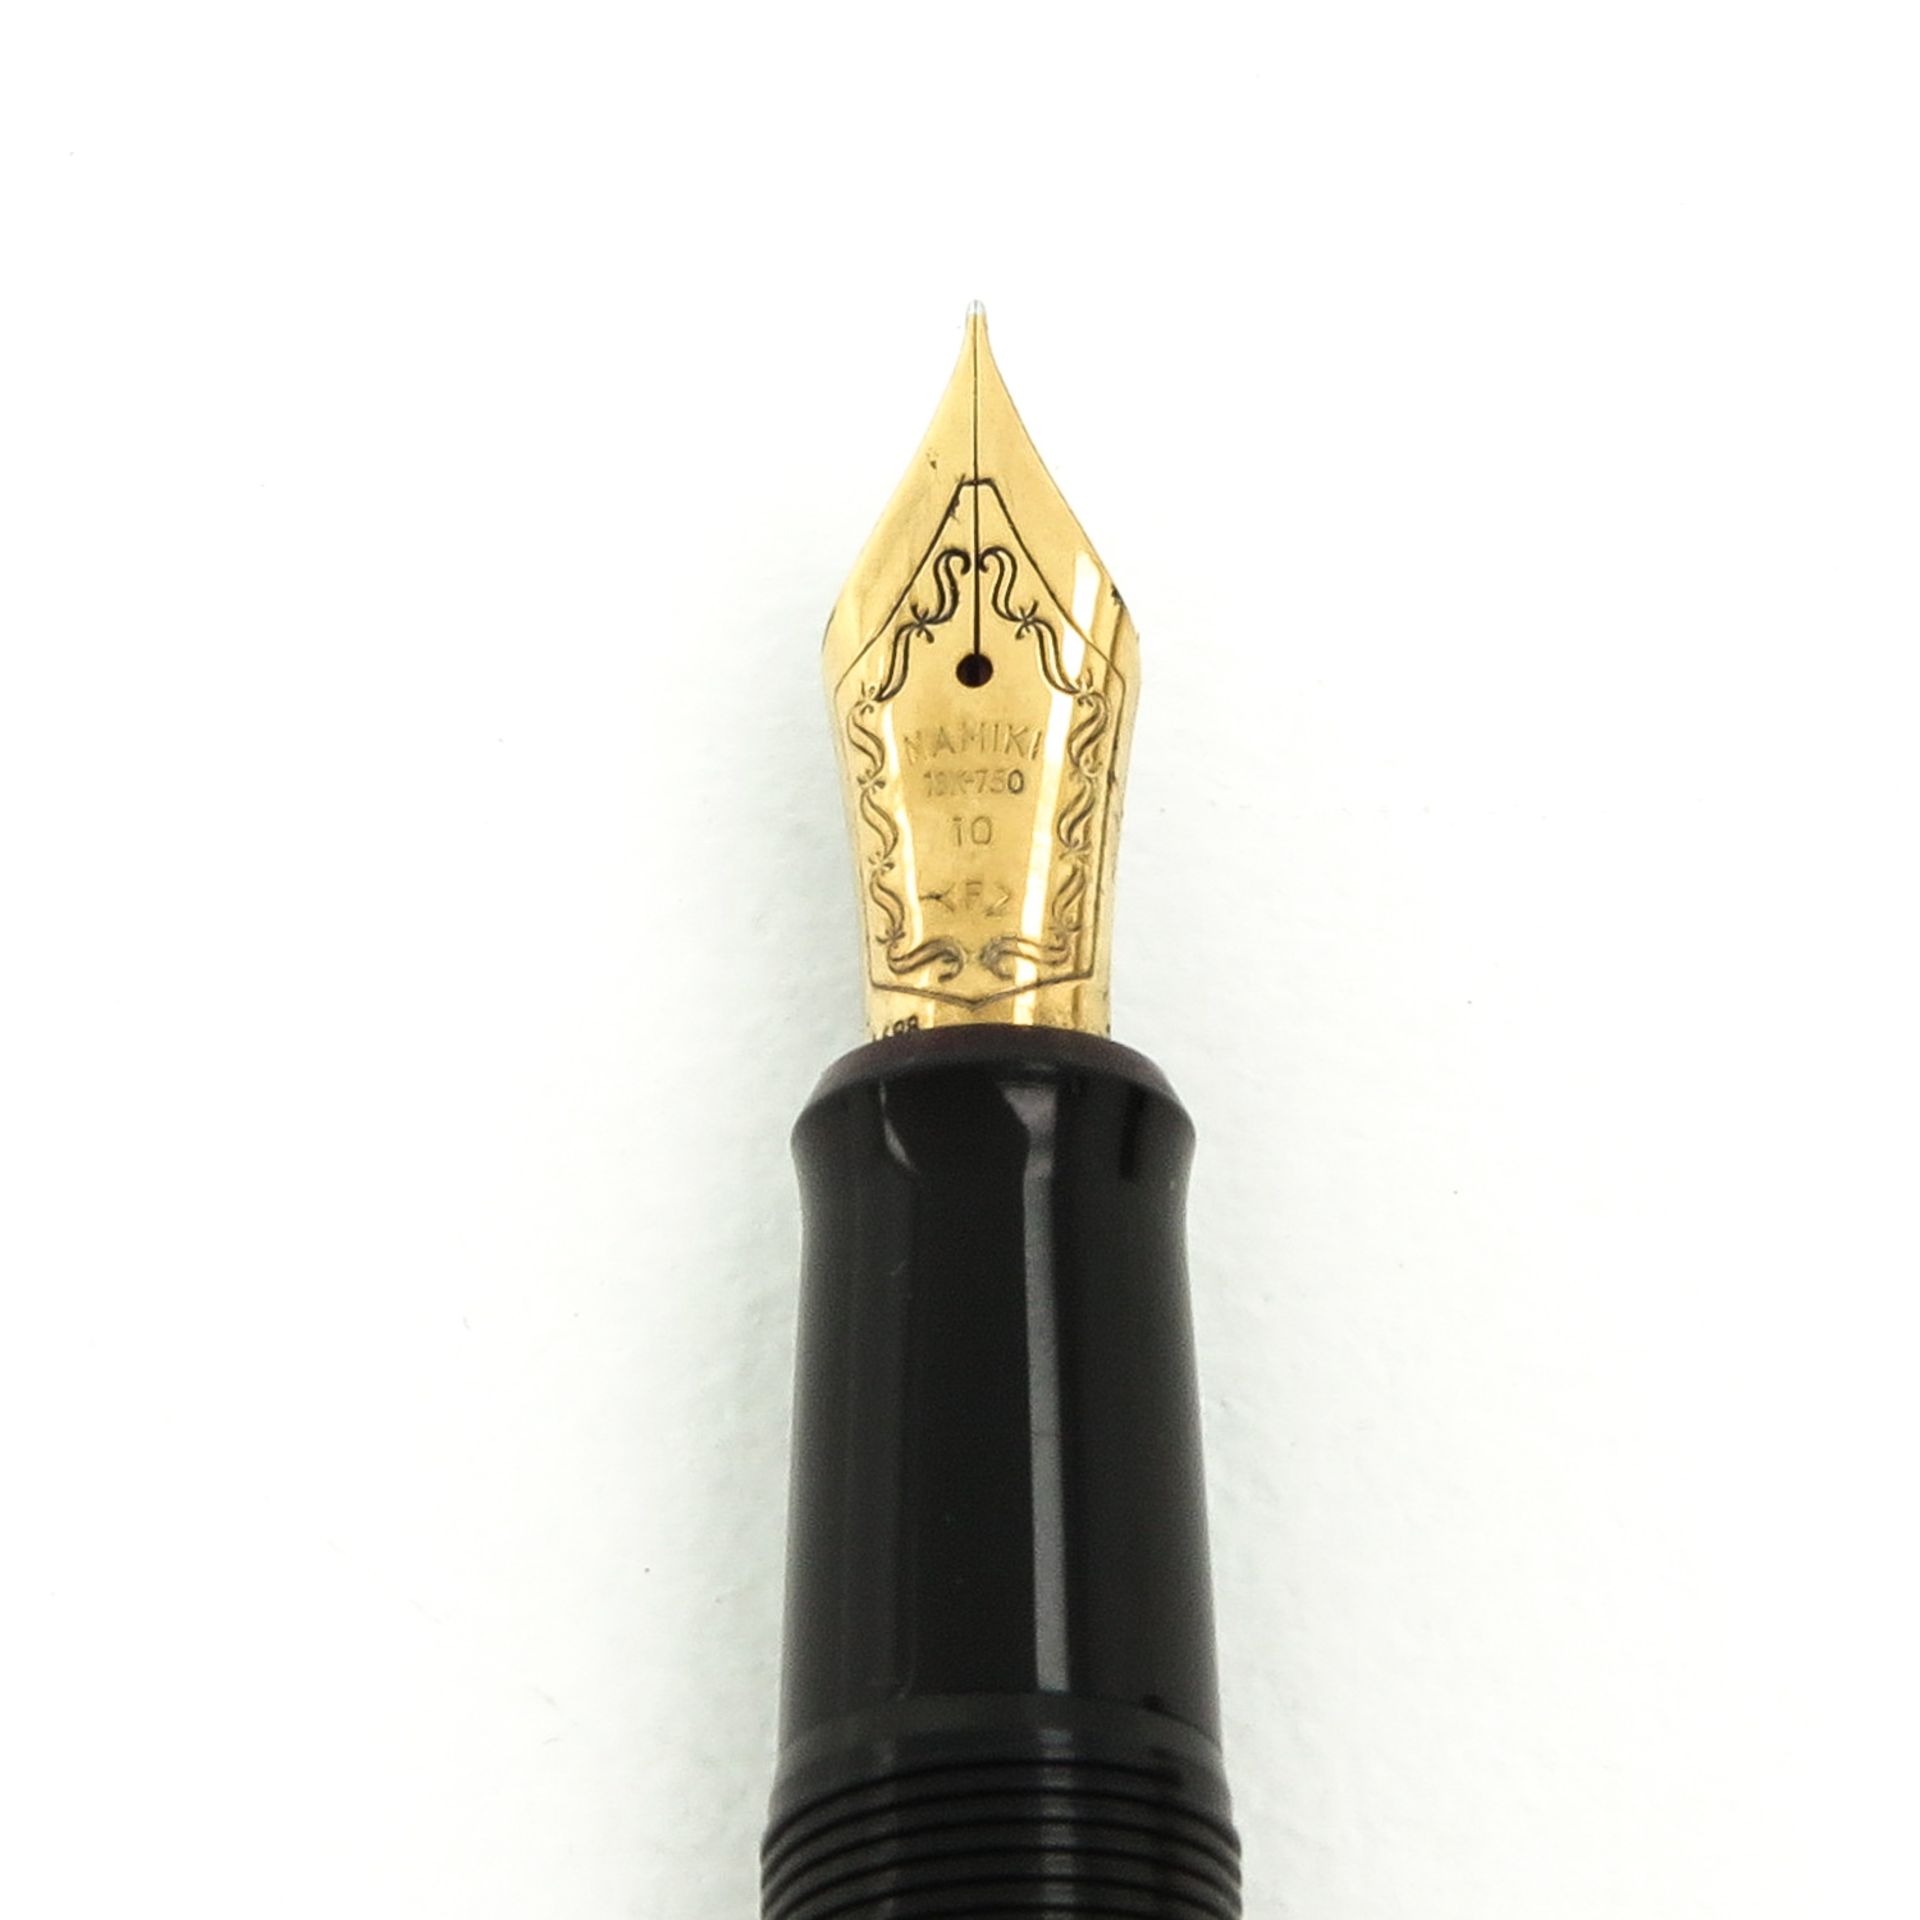 A Namiki Yukari Double Goldfish Fountain Pen - Image 5 of 7